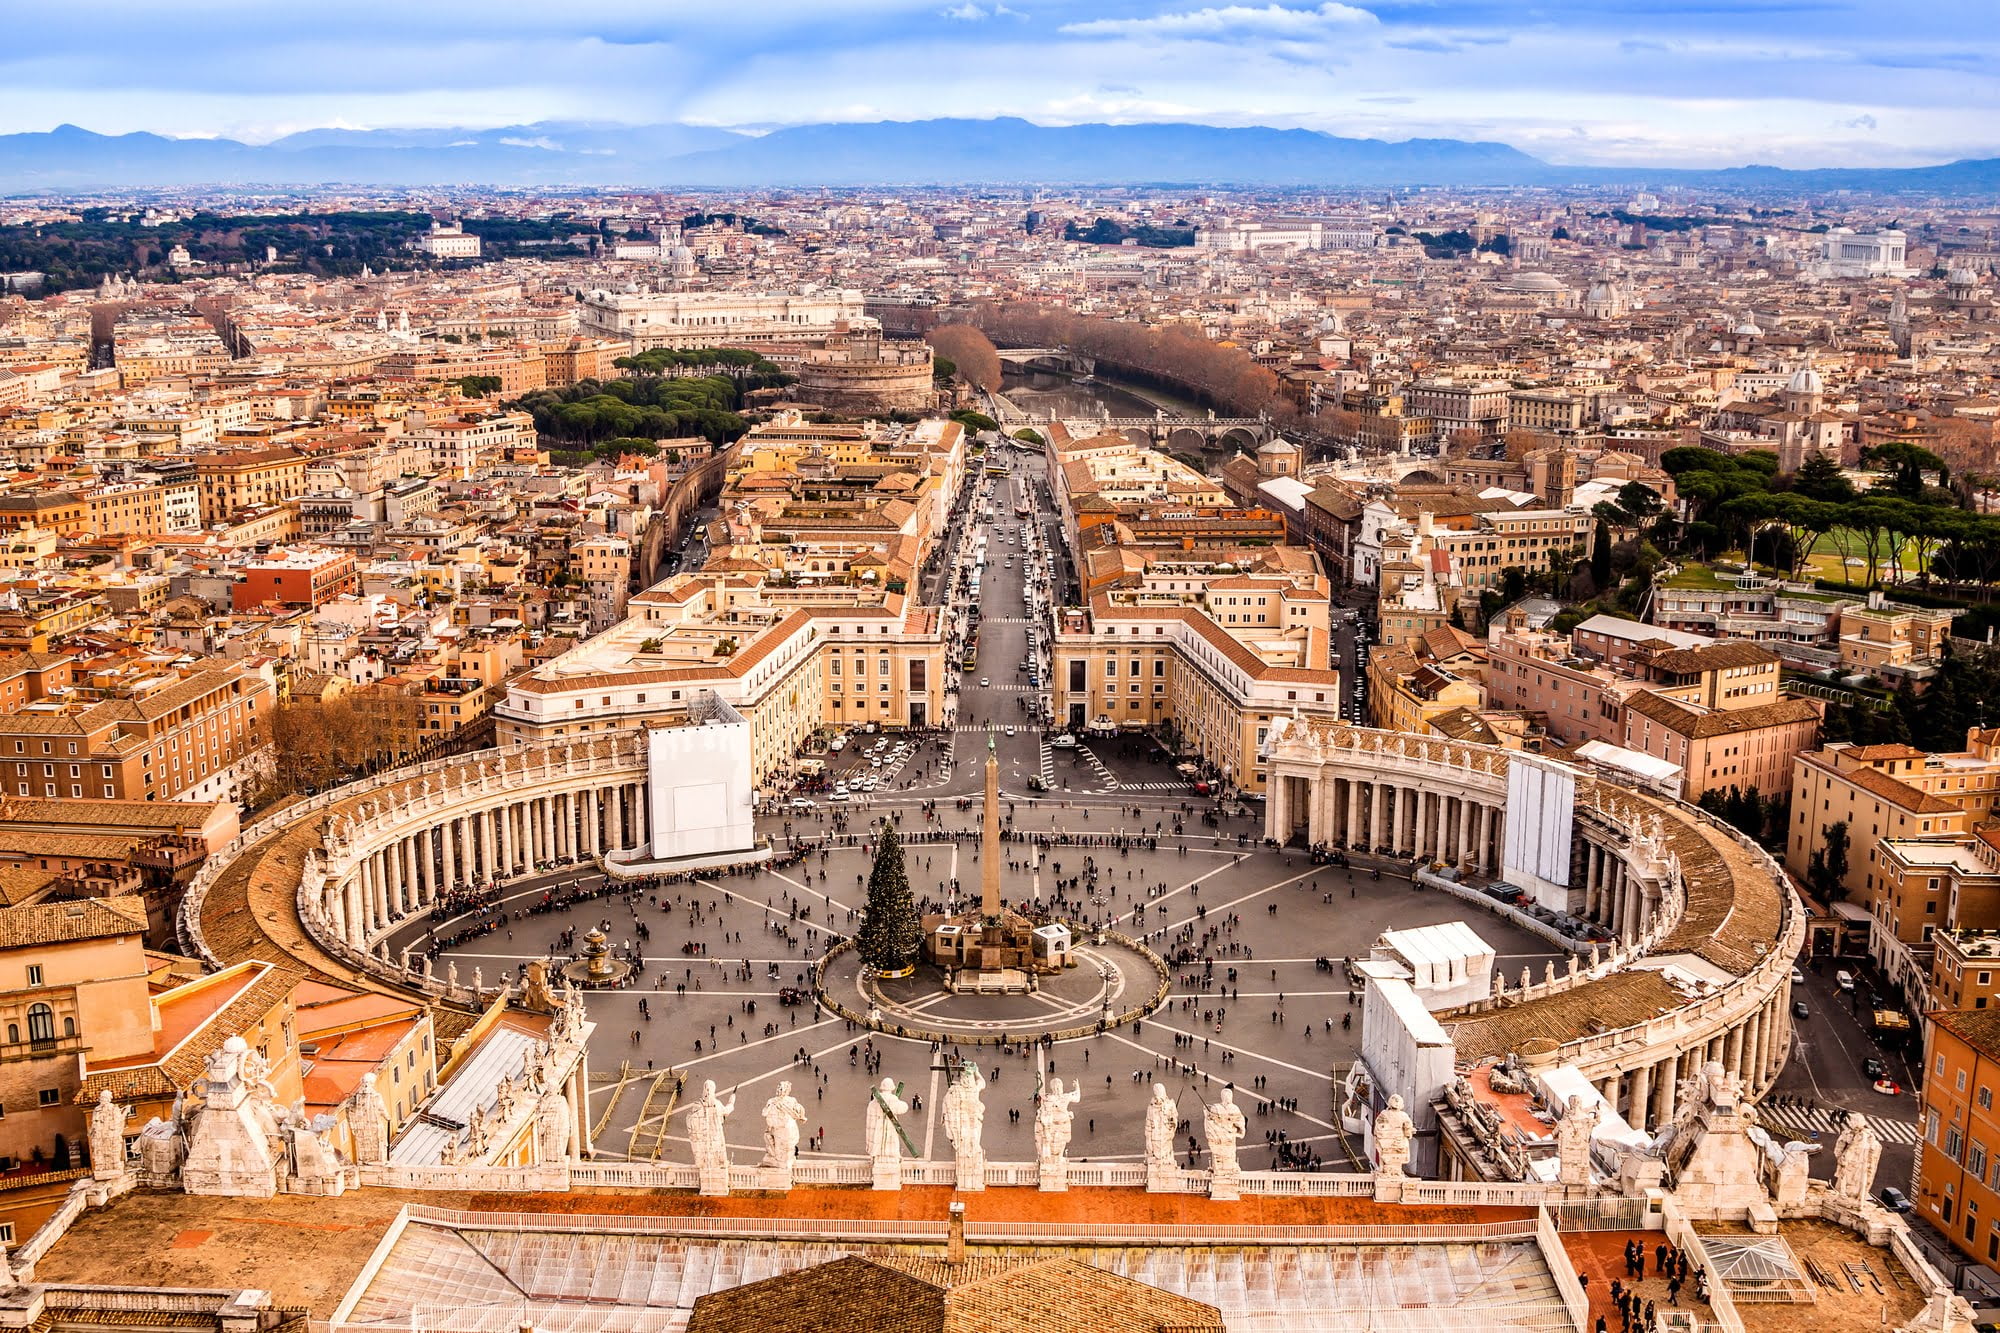 Rejsen går til Rom: Vatikanet, ofte overset, men en hel dags italiensk og katolsk kunst og historie